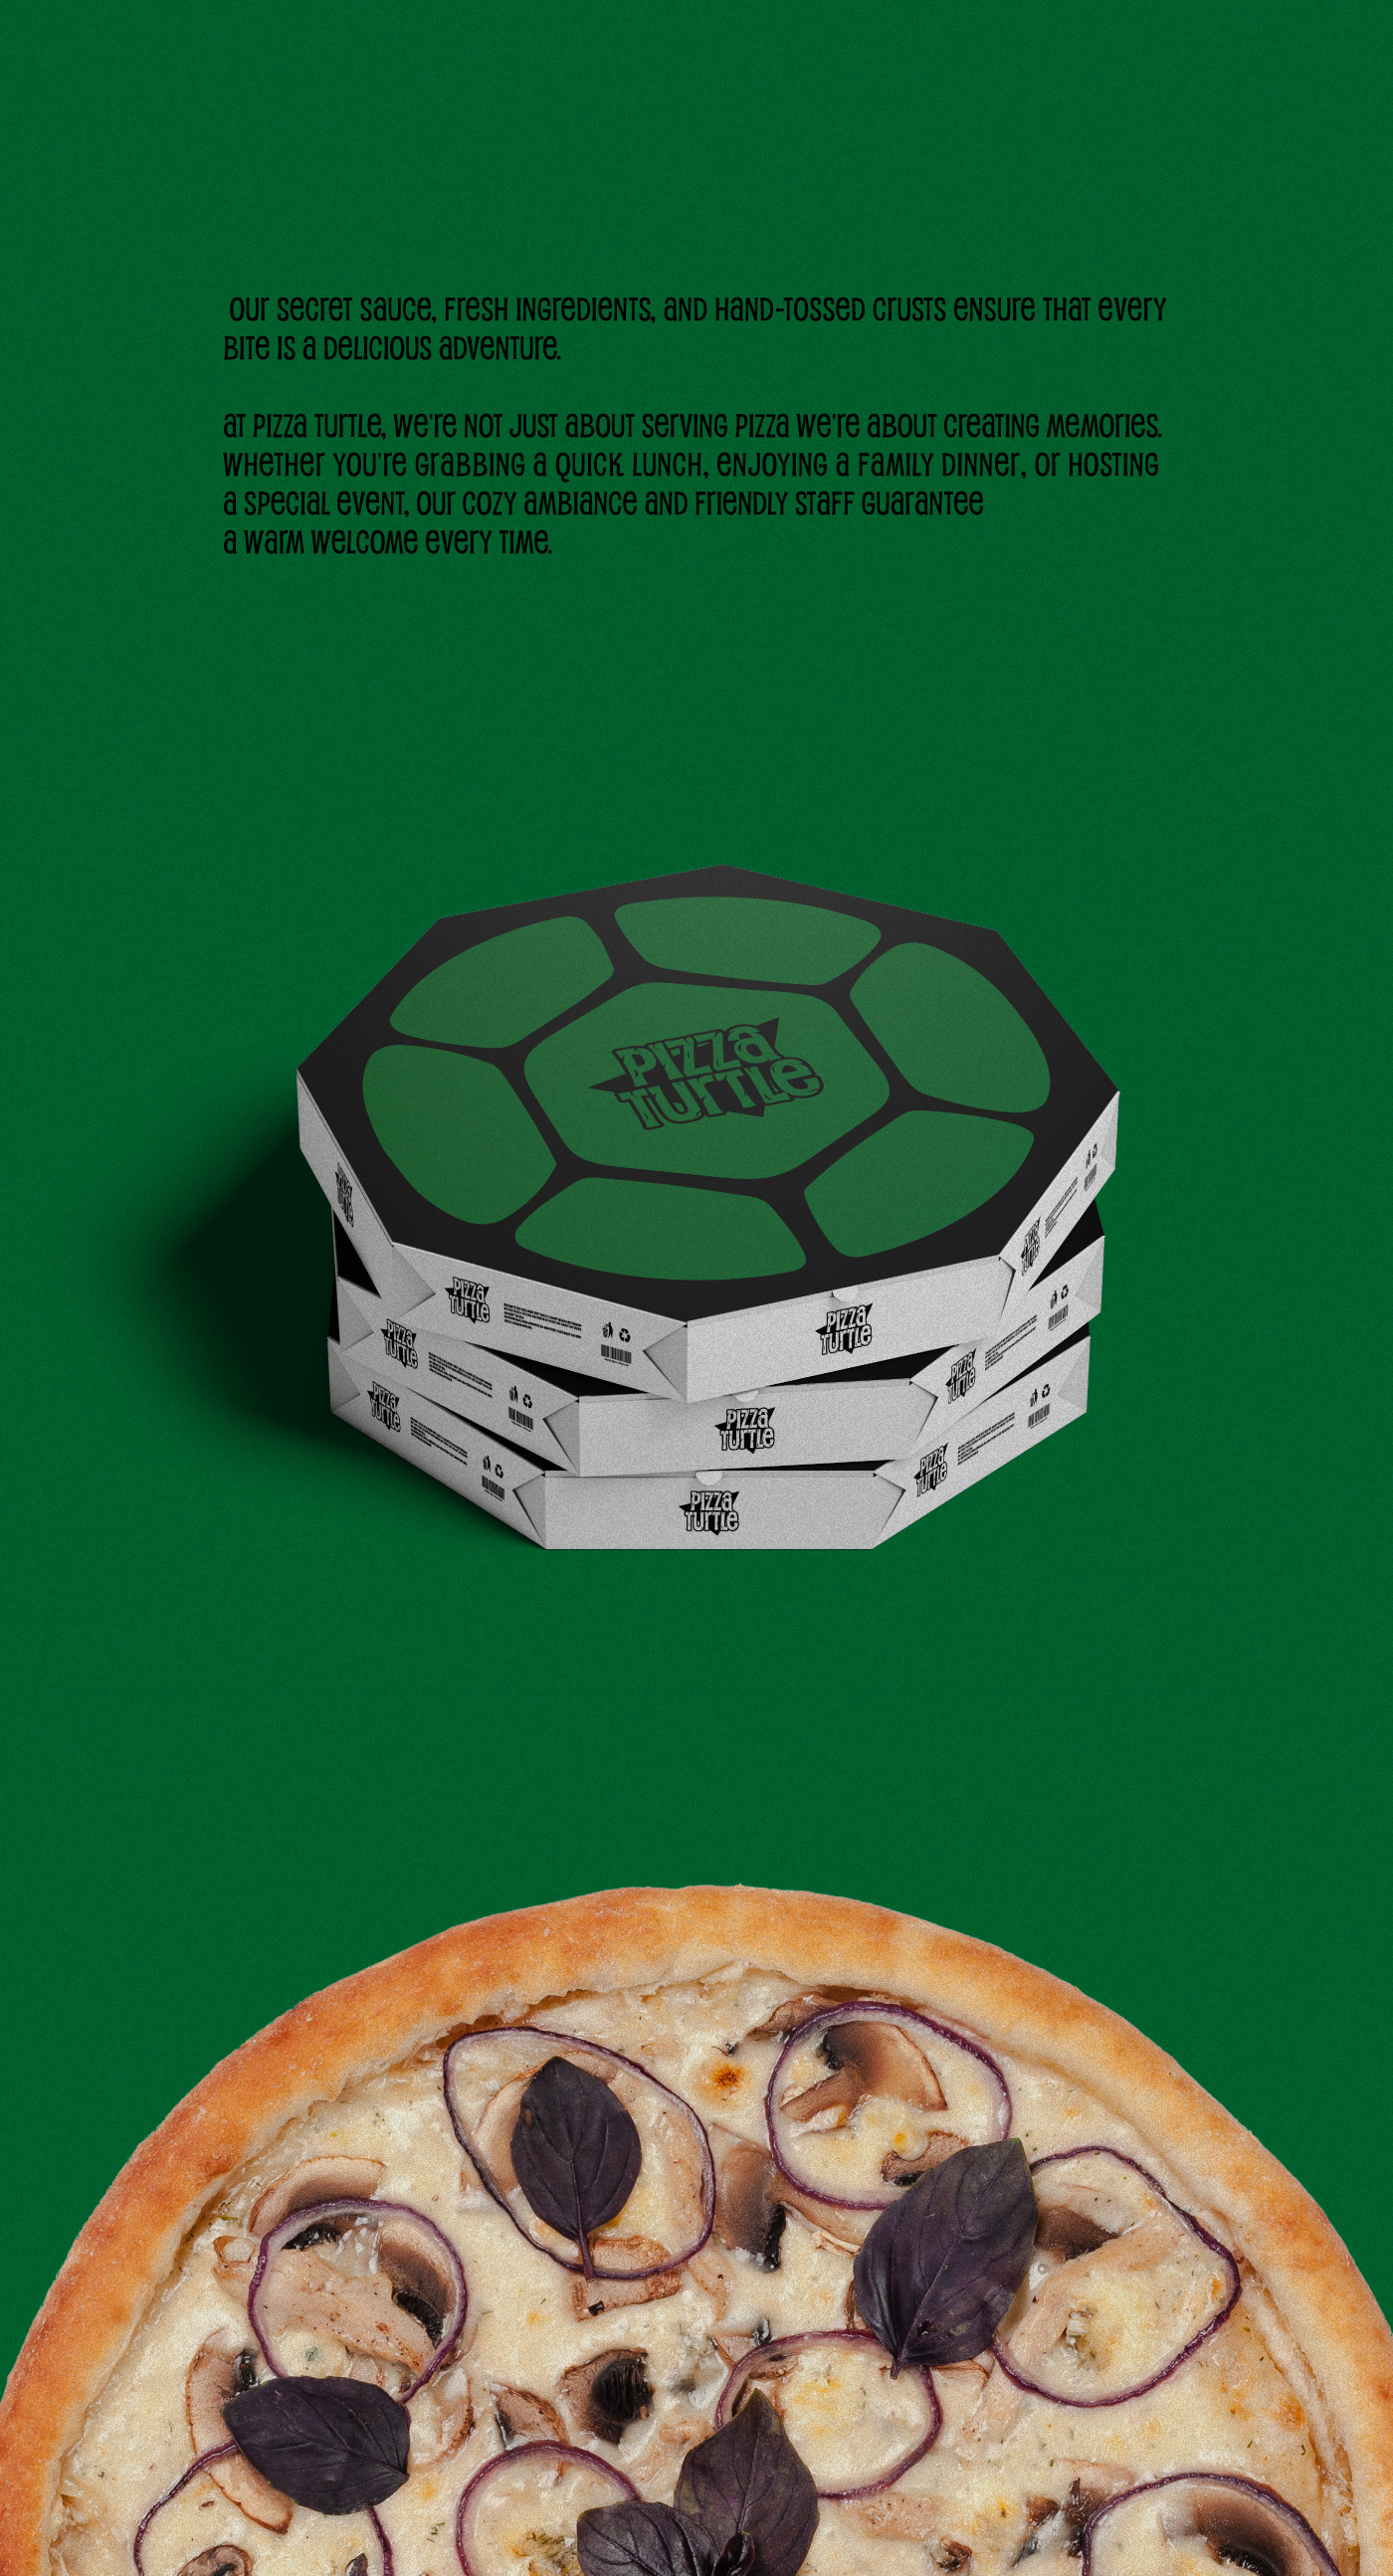 Pizza restaurant Ninja Turtles logo brand identity visual Packaging Social media post Advertising  designer